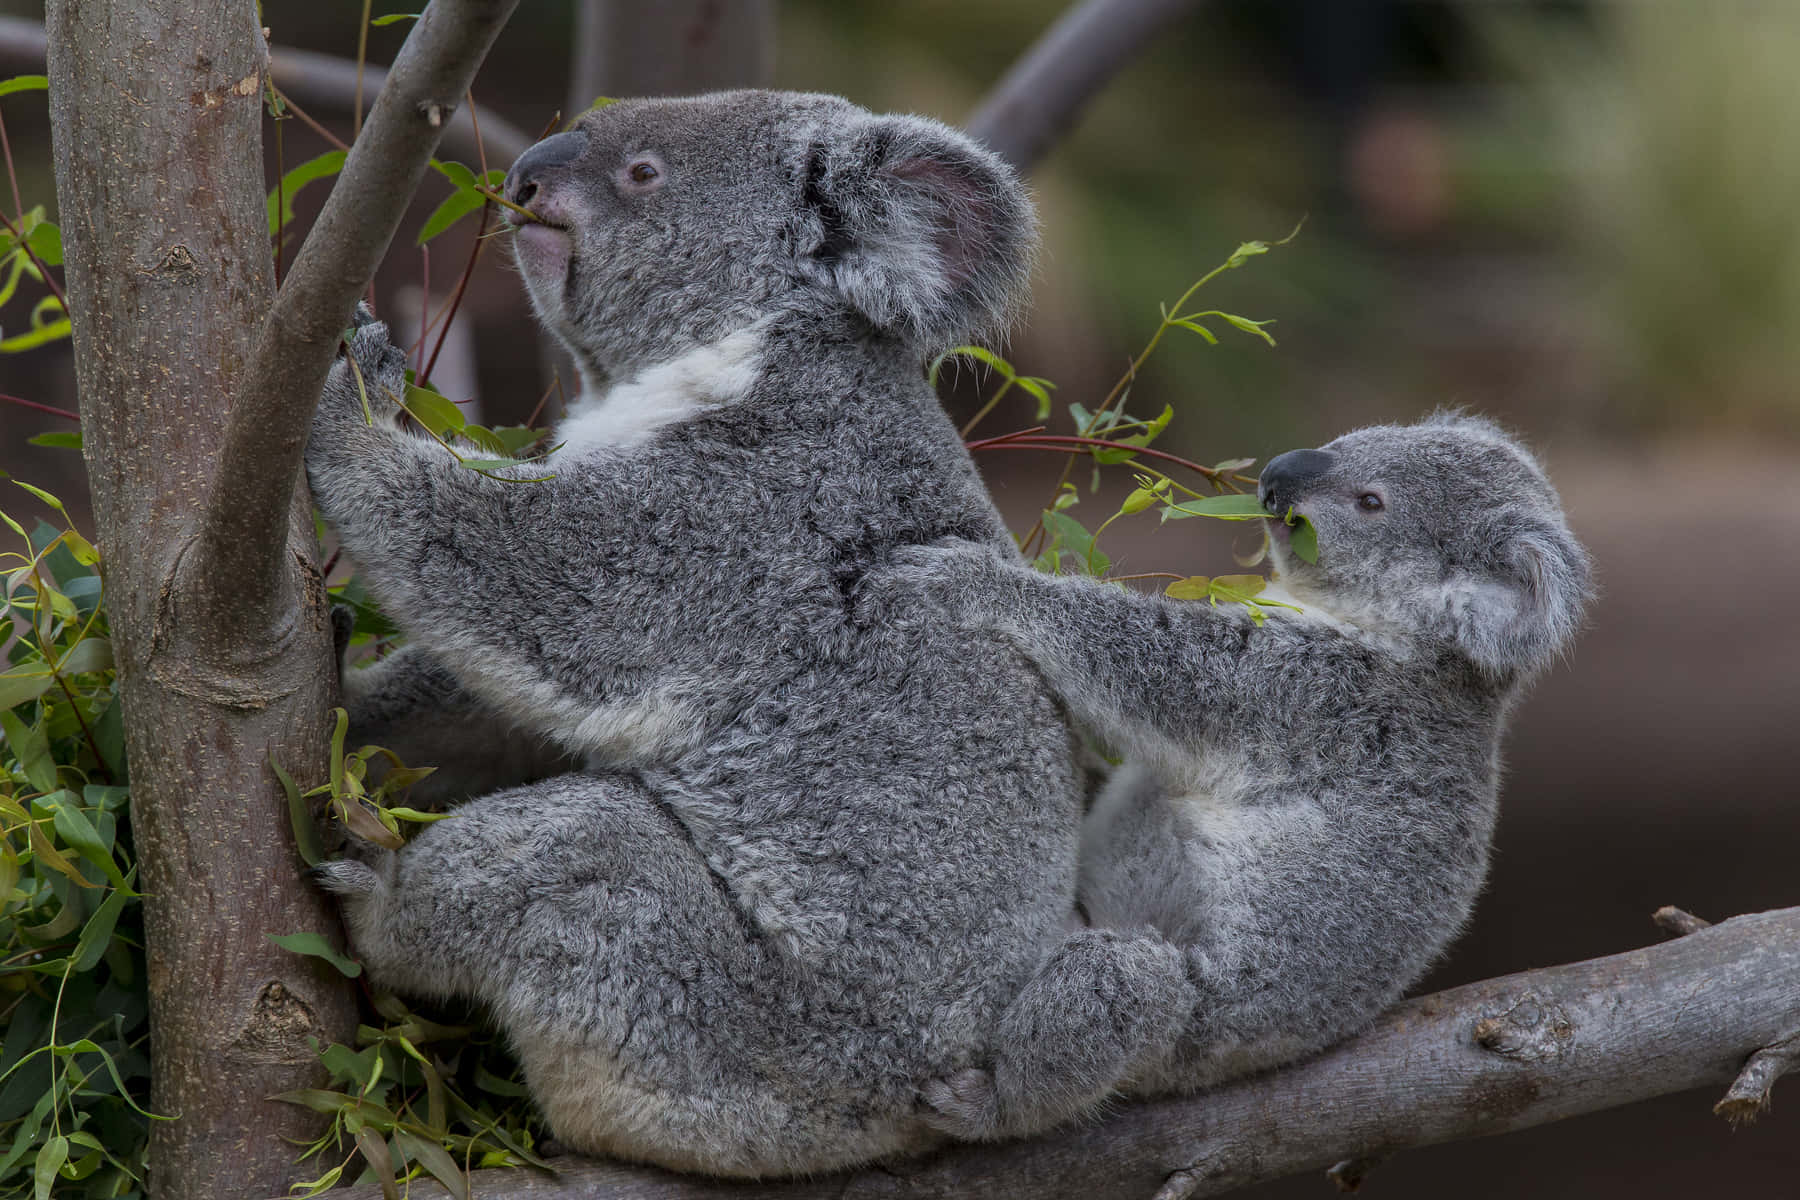 "Kissed by Sunshine – A Koala Enjoys the Outdoors"